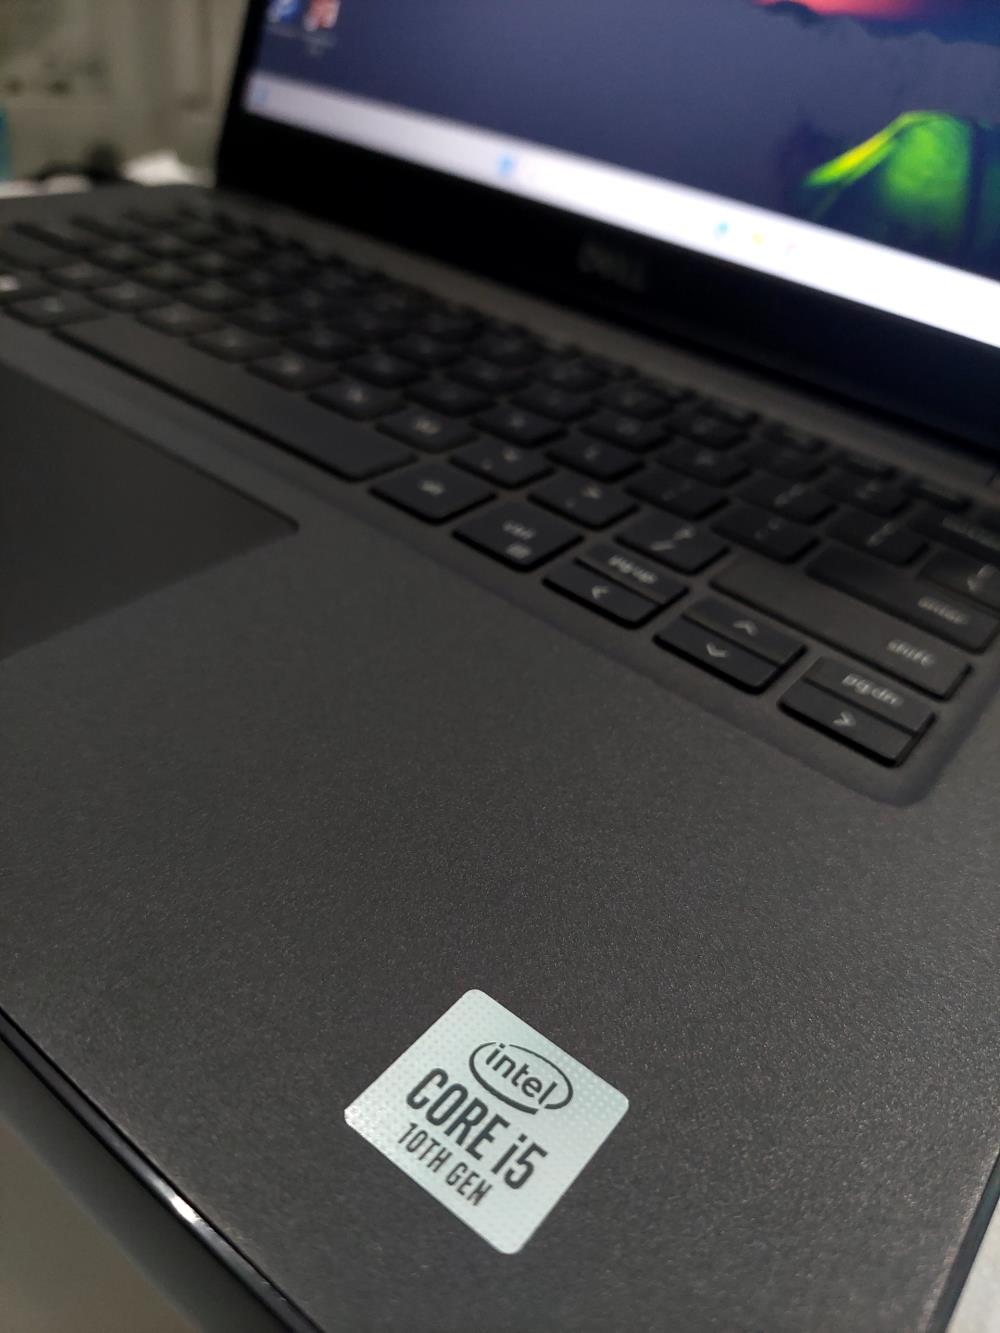 SUPER SALE: Laptop Dell Chính Hãng - Giá Cực Sốc Chỉ Từ 4 Triệu!1452685